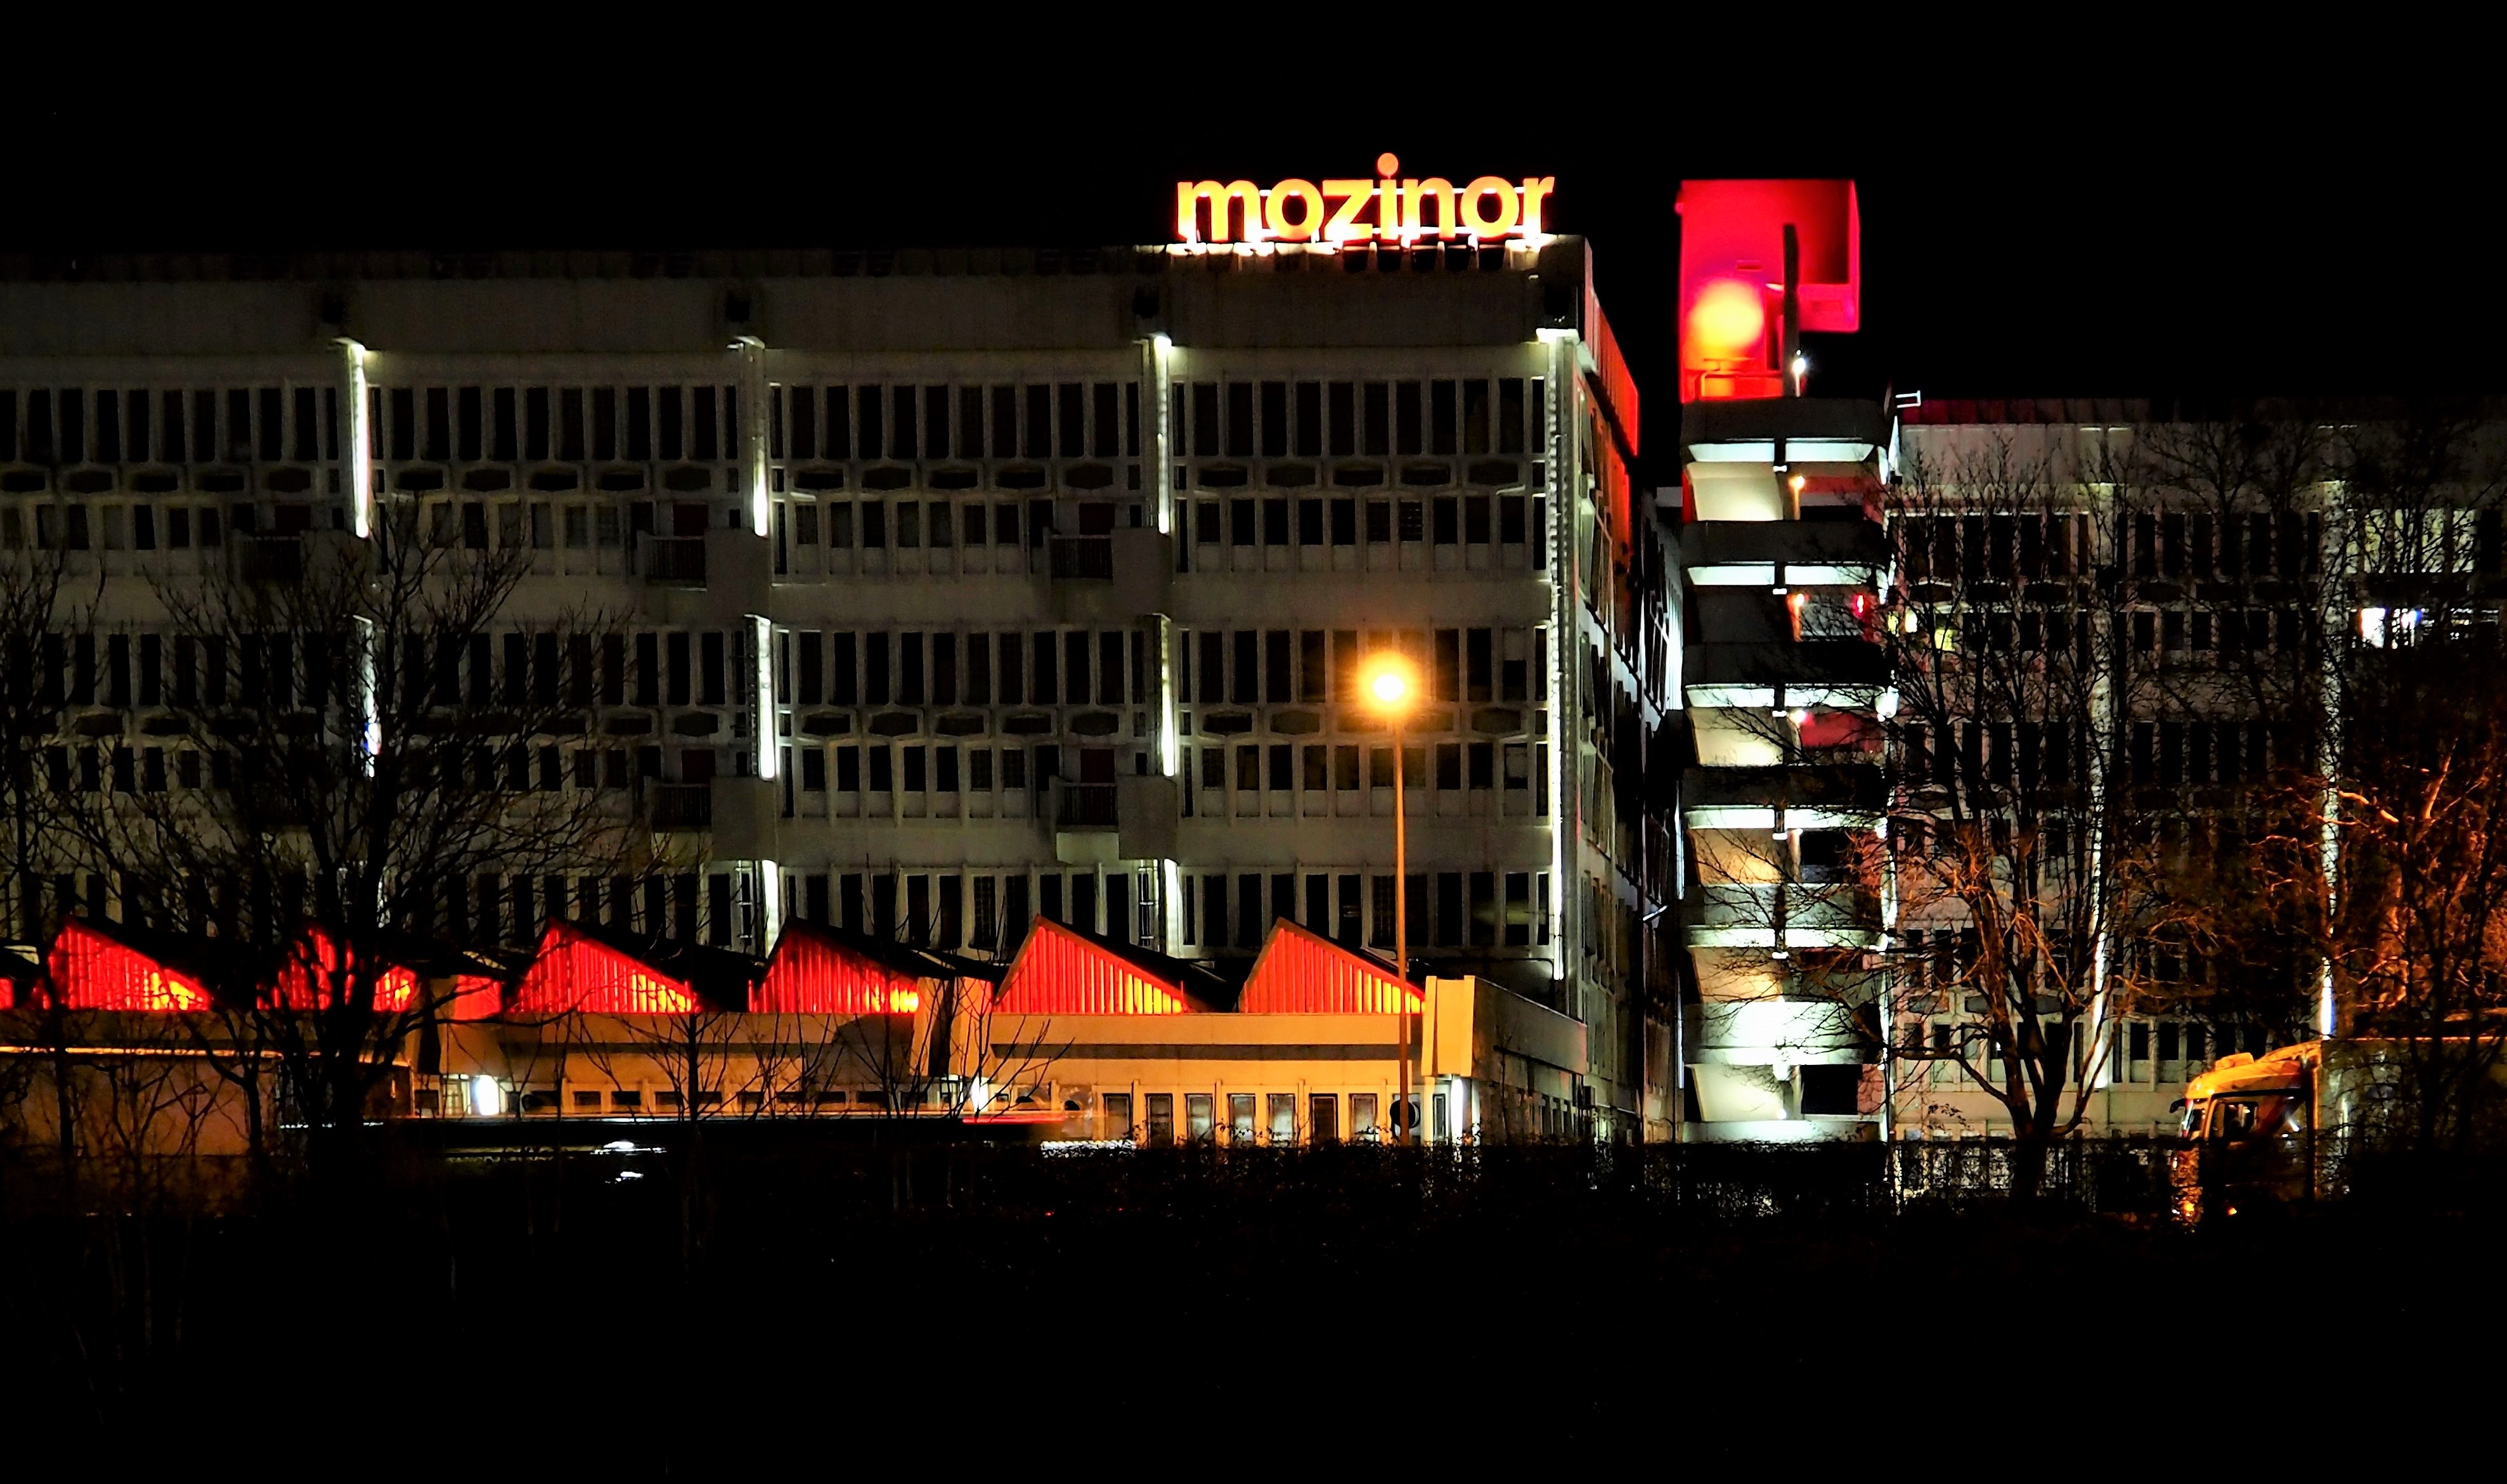 Mozinor - Montreuil - cité industrielle - éclairage du bâtiment